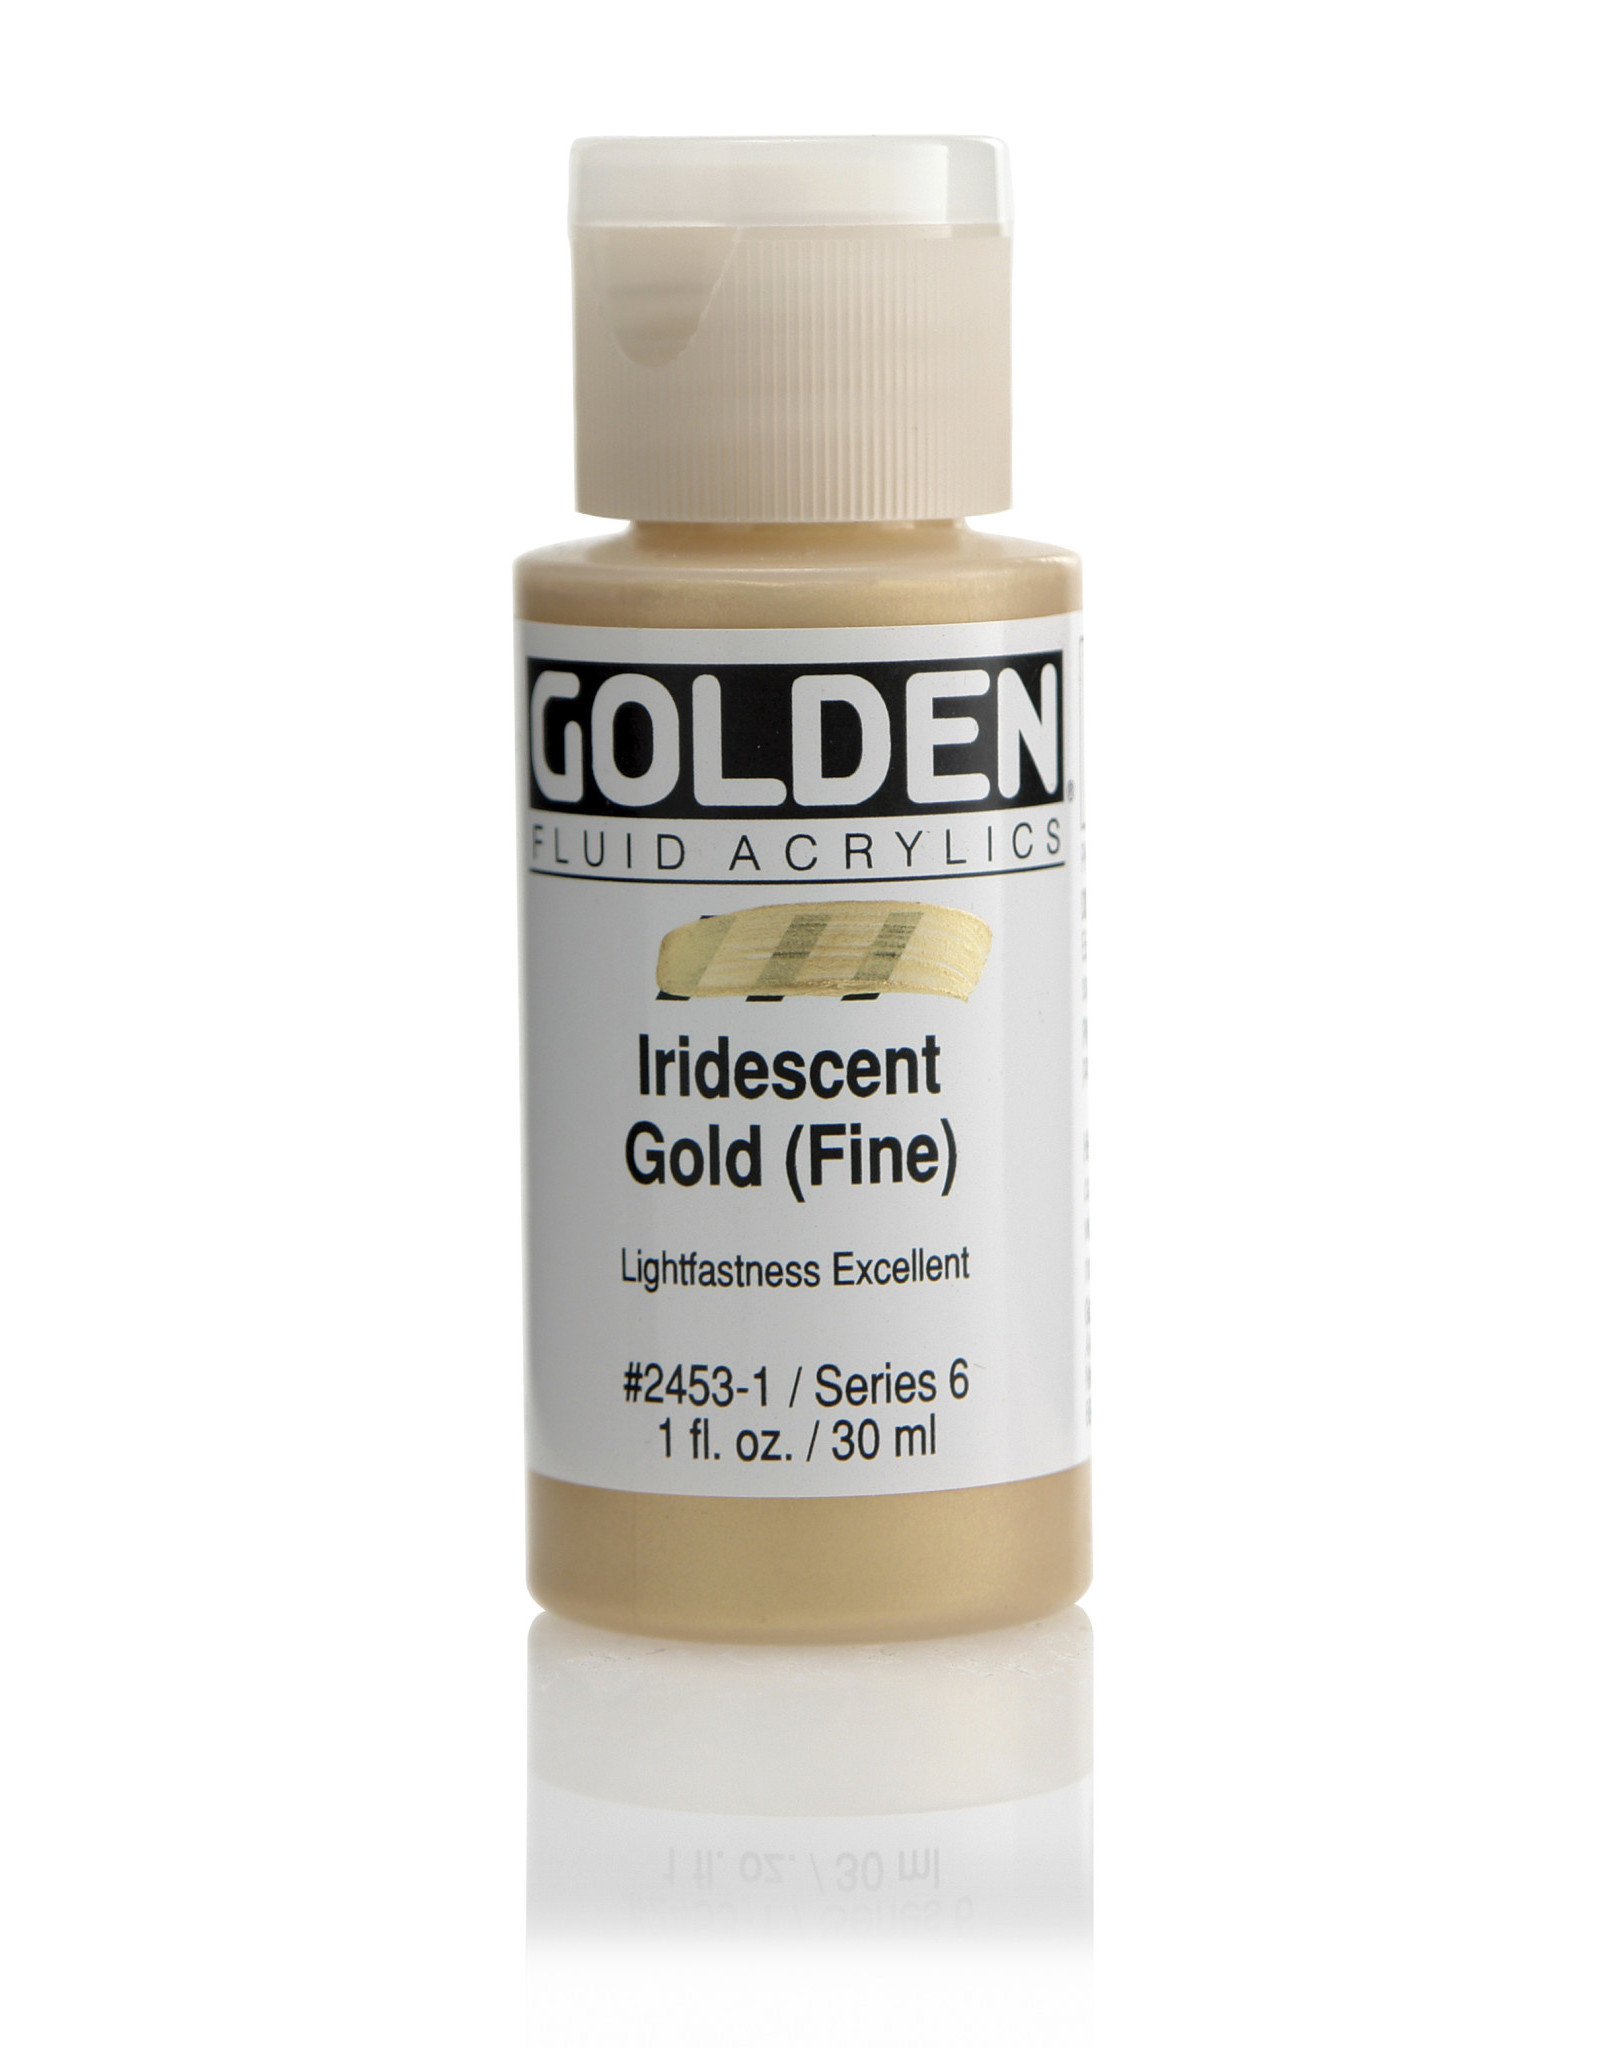 Golden Golden Fluid Acrylics, Iridescent Gold (Fine) 1oz Cylinder